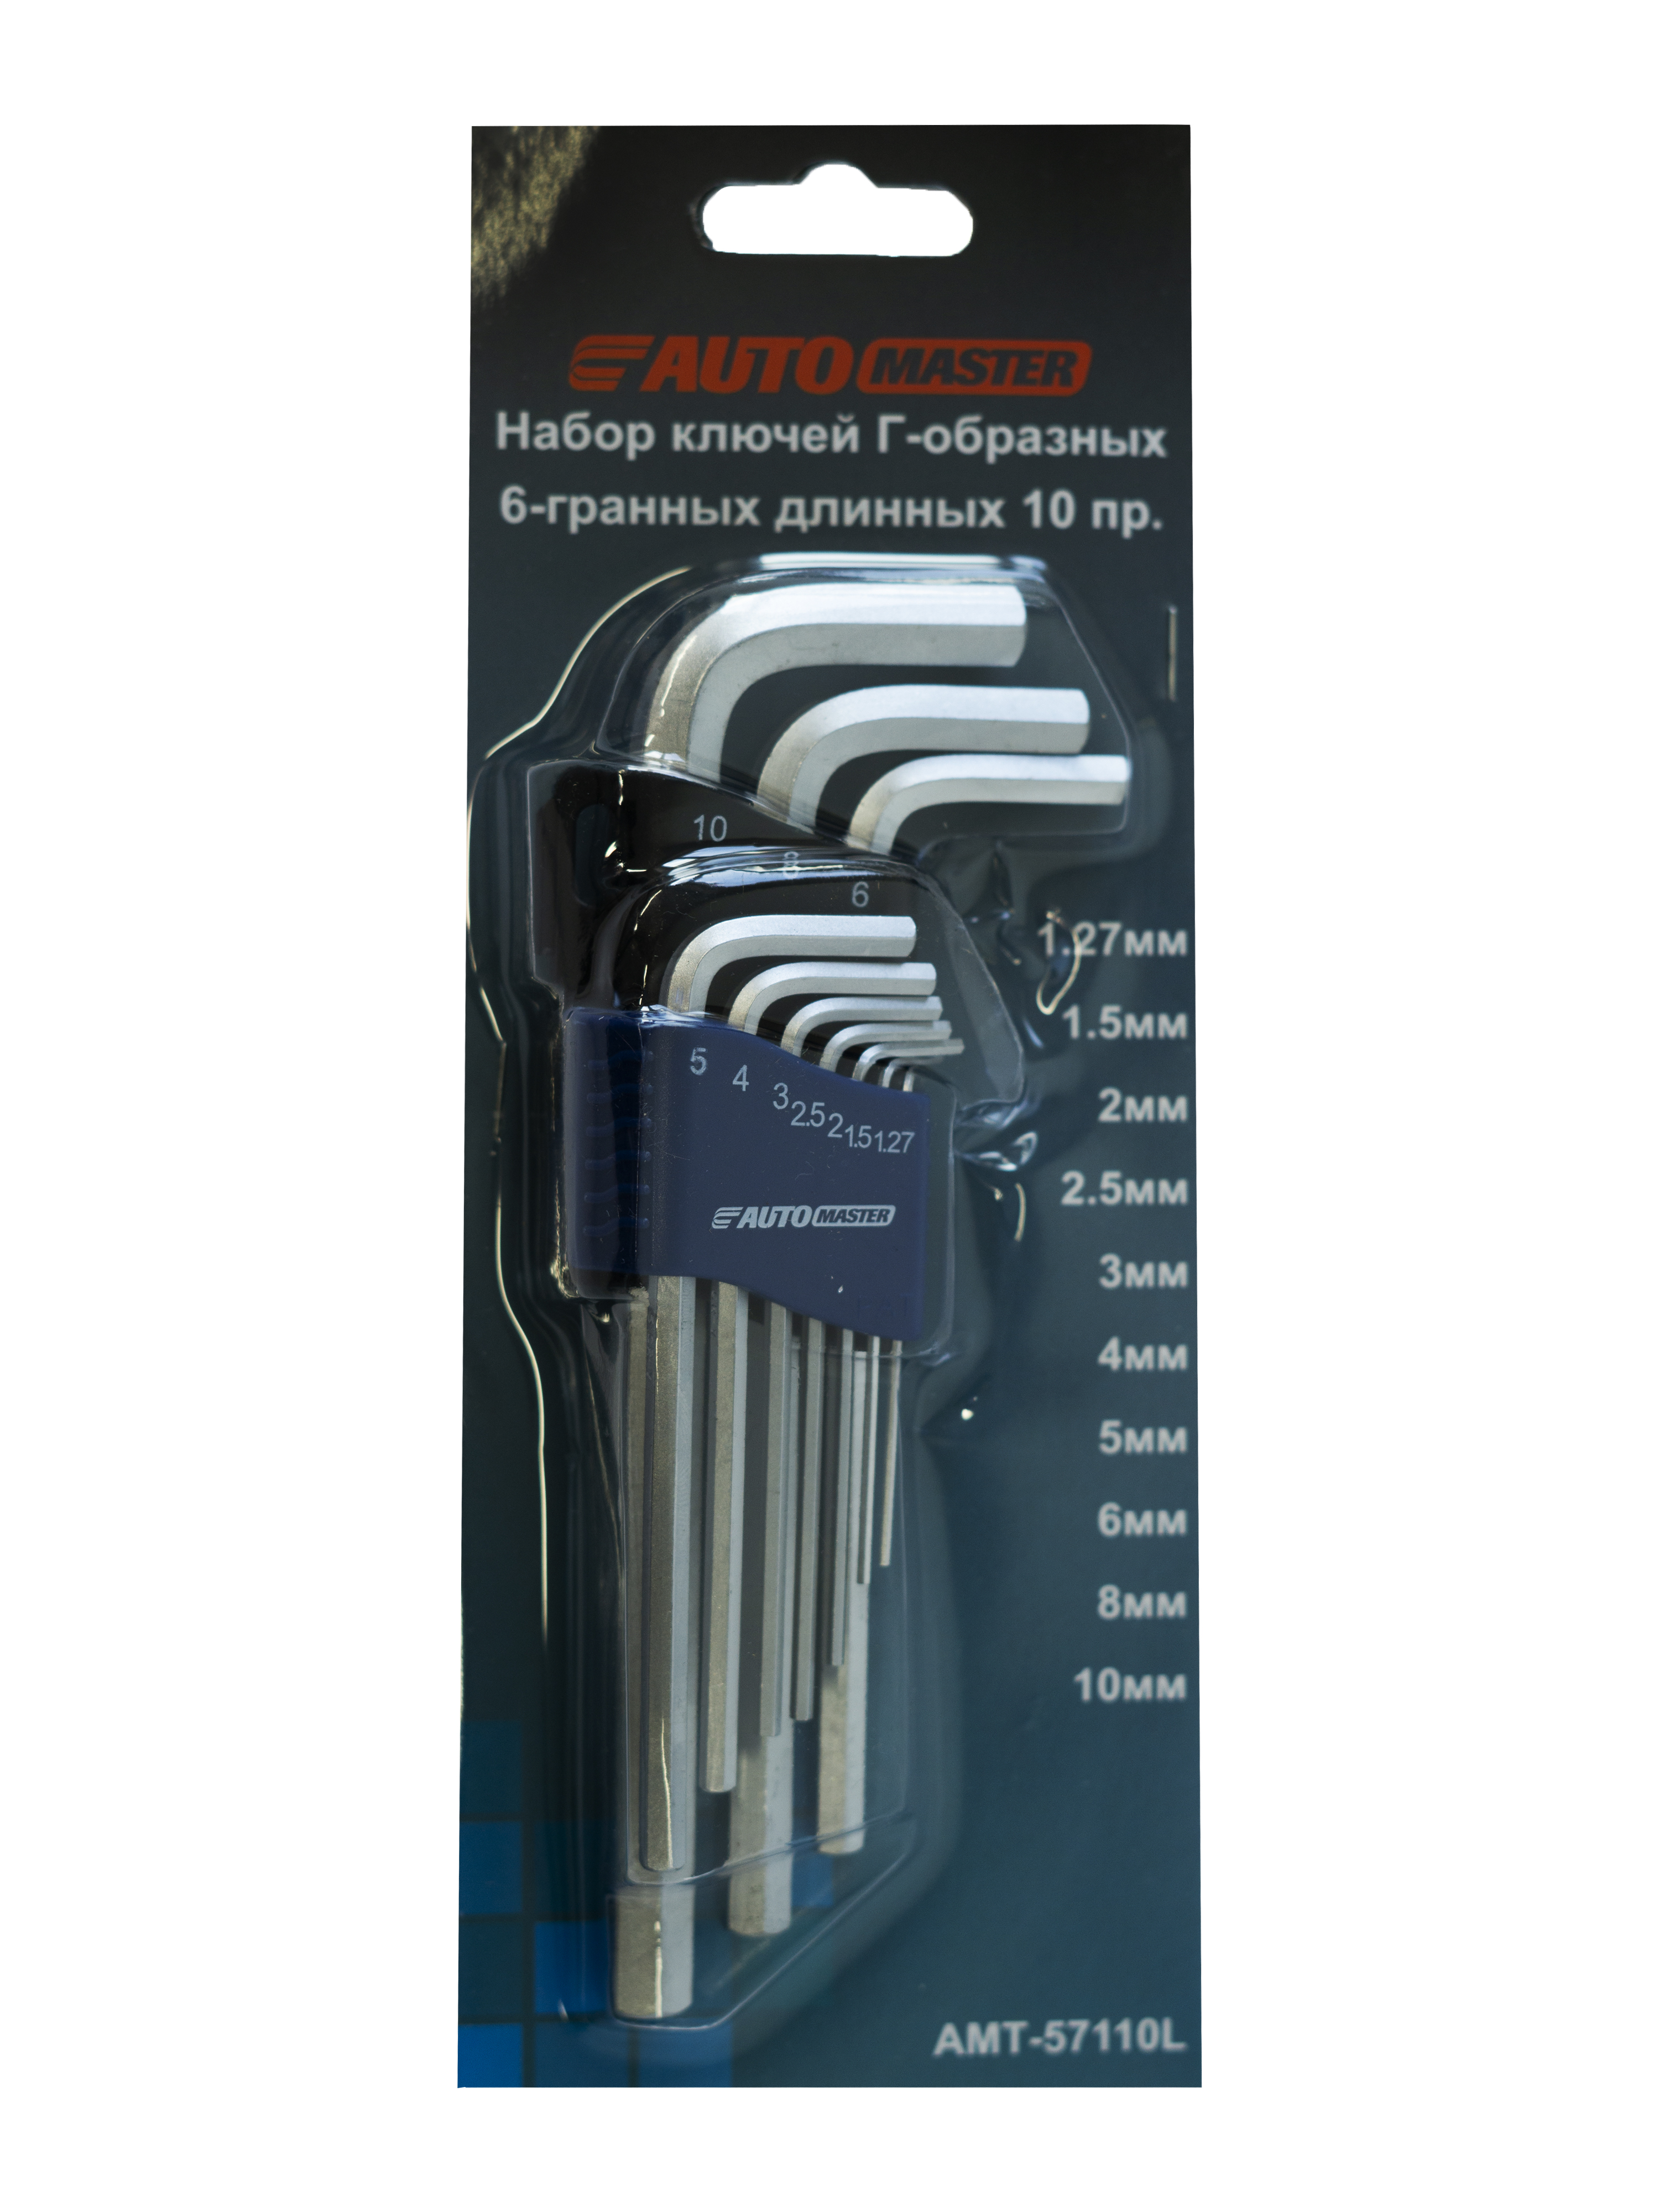 Набор ключей Automaster Г-образный 6-граней длинных 10 предметов 1,27-10 мм складной набор ключей kendo